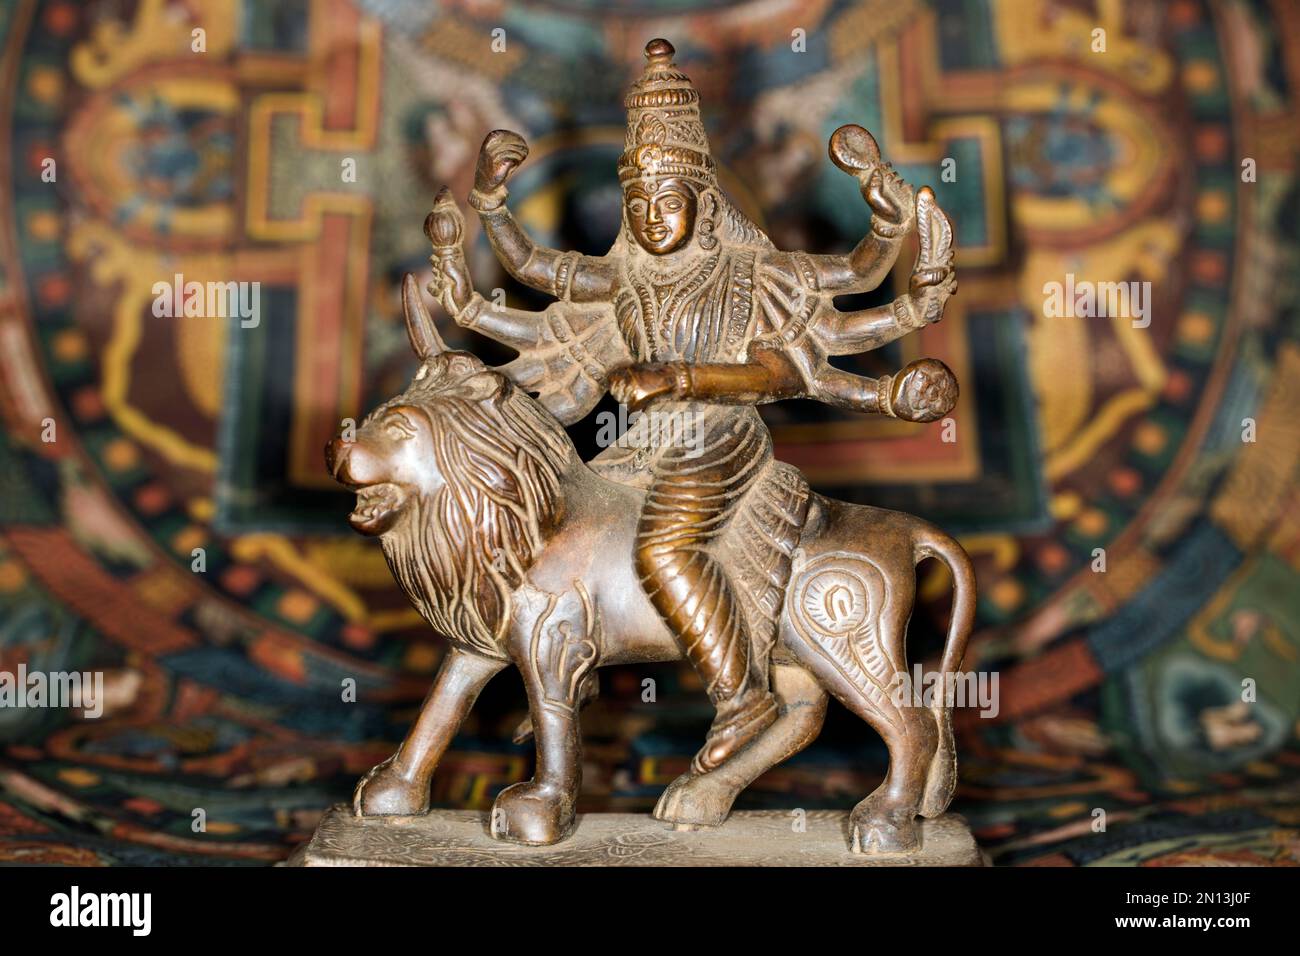 Figura de bronce de la diosa india Durga montando en una figura de león, fotografía de estudio con una thangka tibetana en el fondo Foto de stock